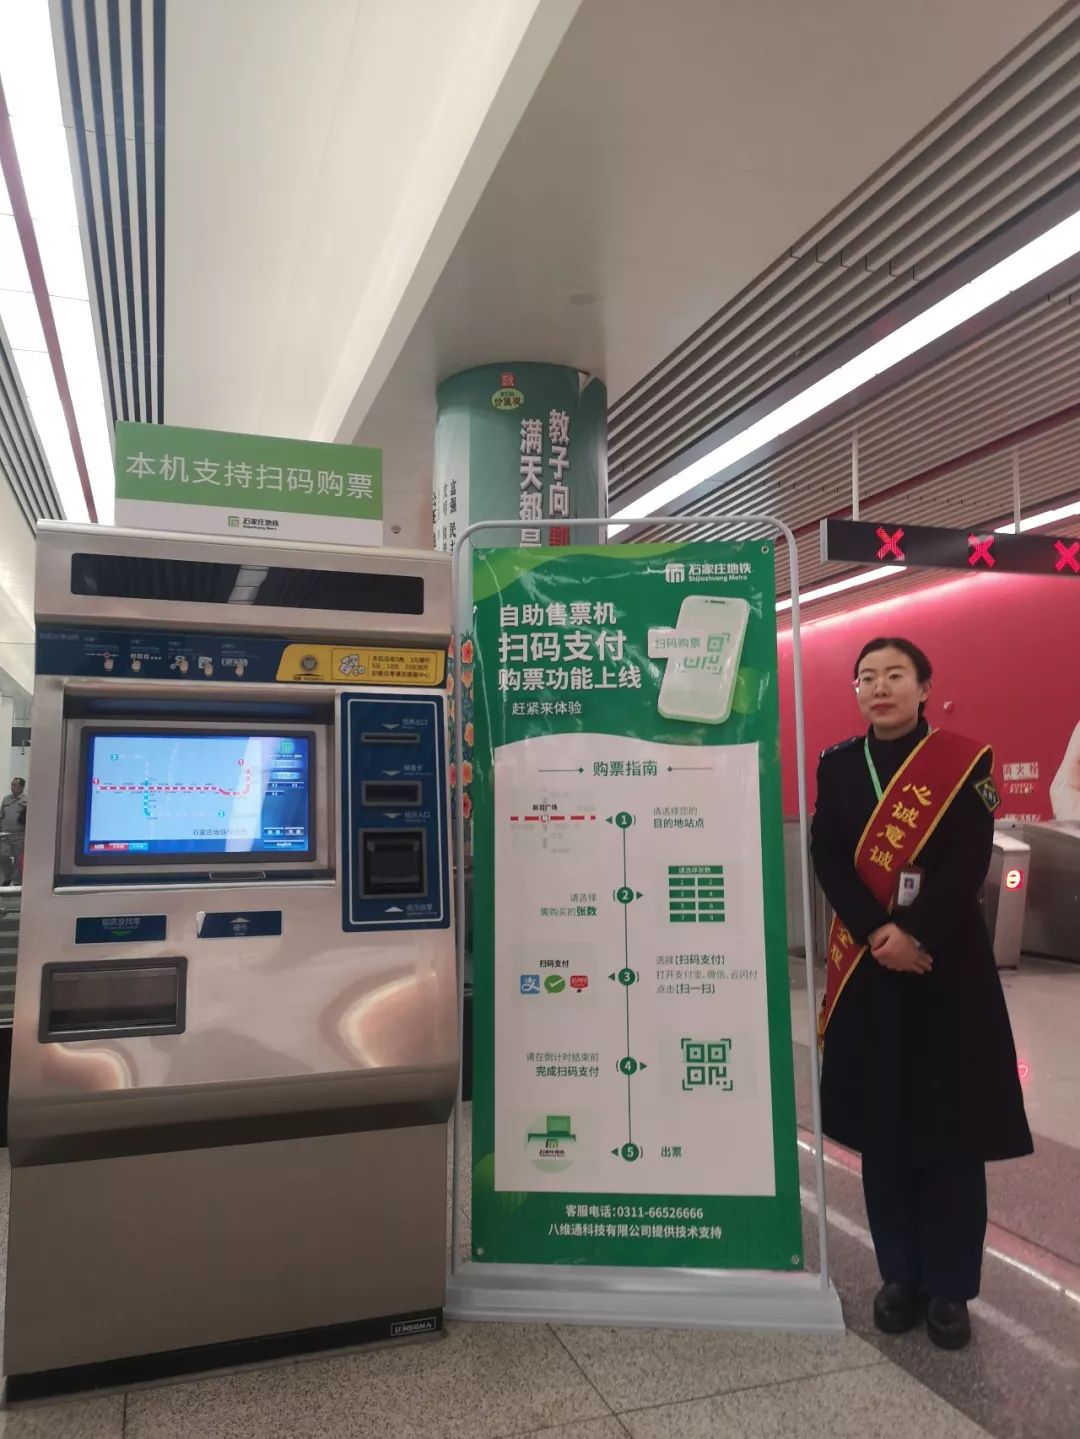 中国铁路通票如何购买和使用？ - 知乎